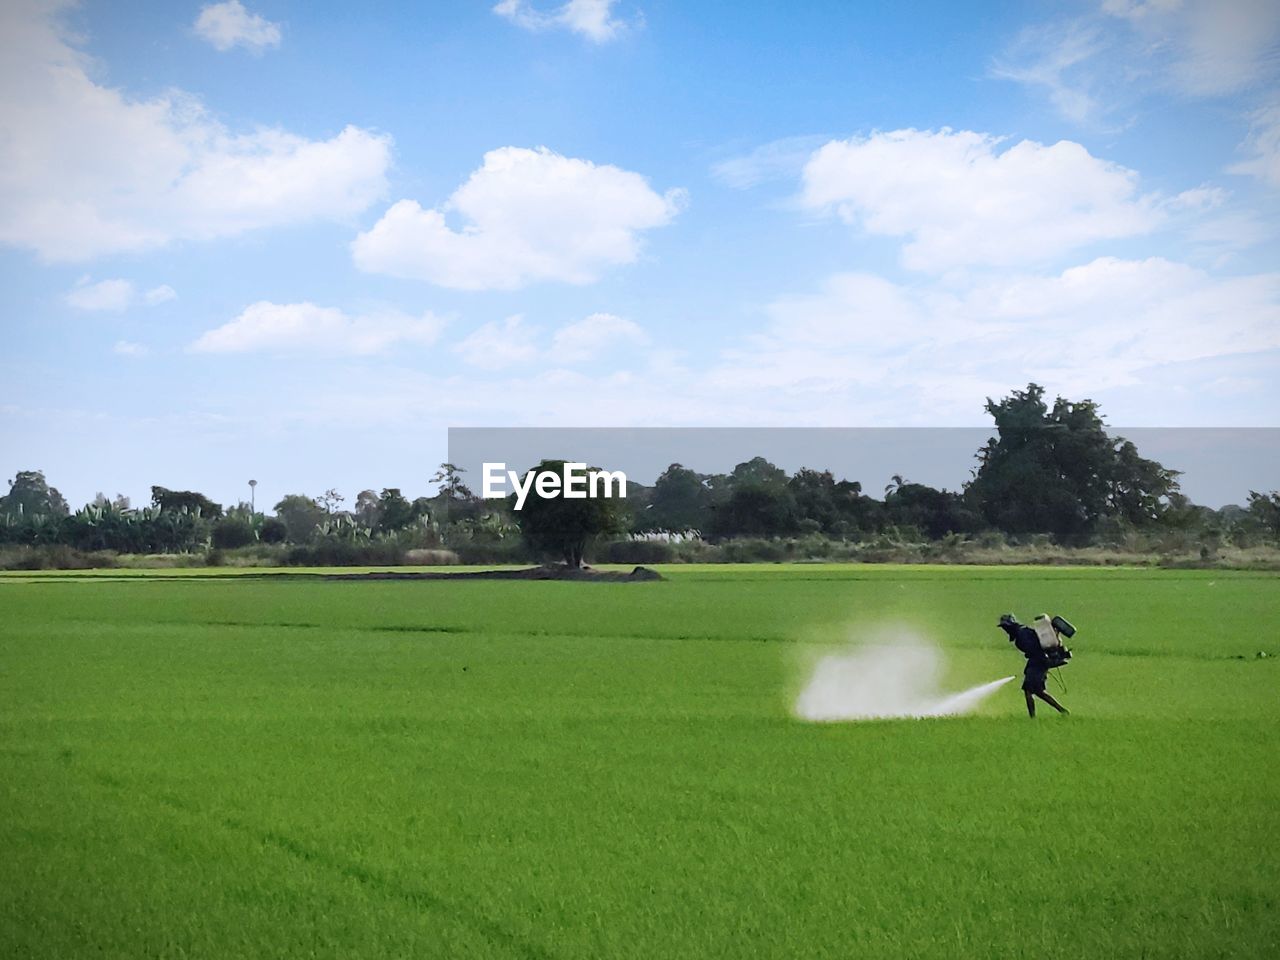 Man spraying fertilizers in farm